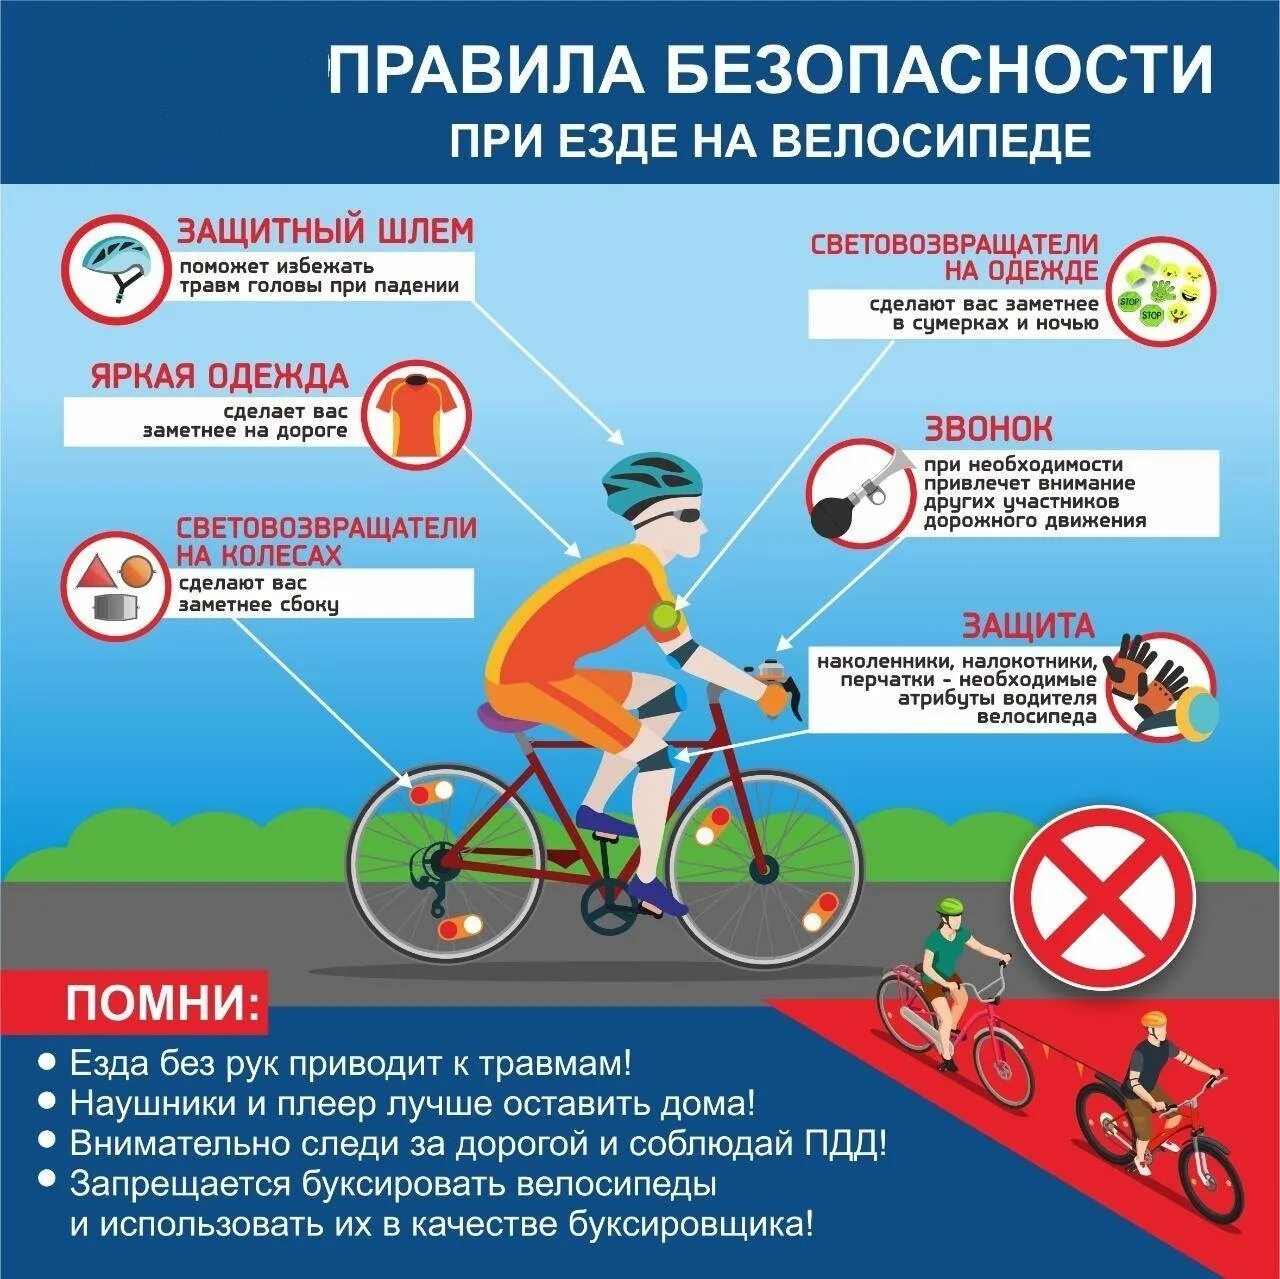 Правила пдд езда. Правила для велосипедистов. Безопасность движения велосипедиста. Памятка велосипедиста. Безопасность езды на велосипеде.